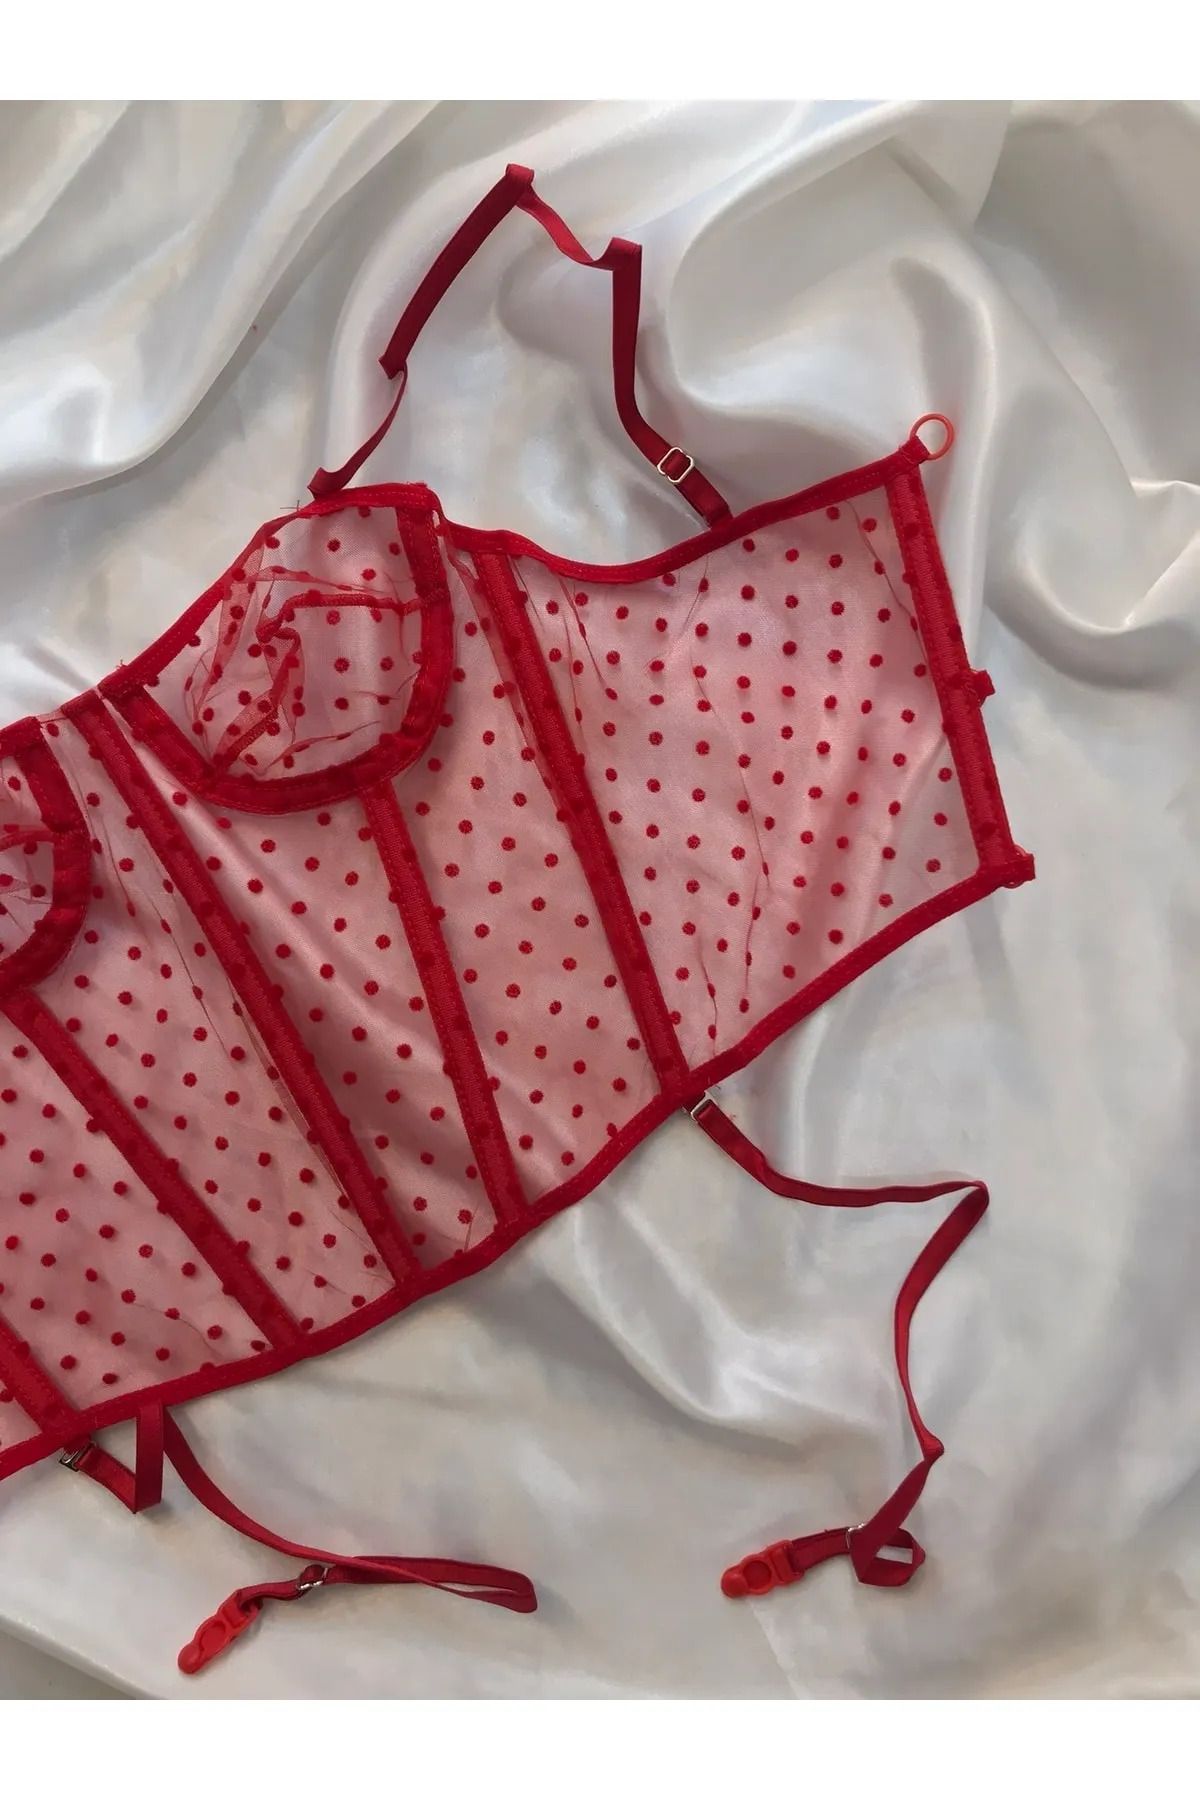 DERİN SECRET Kadın Kırmızı Balenli Puantiyeli Vintage Korse Büstiyer Bralet